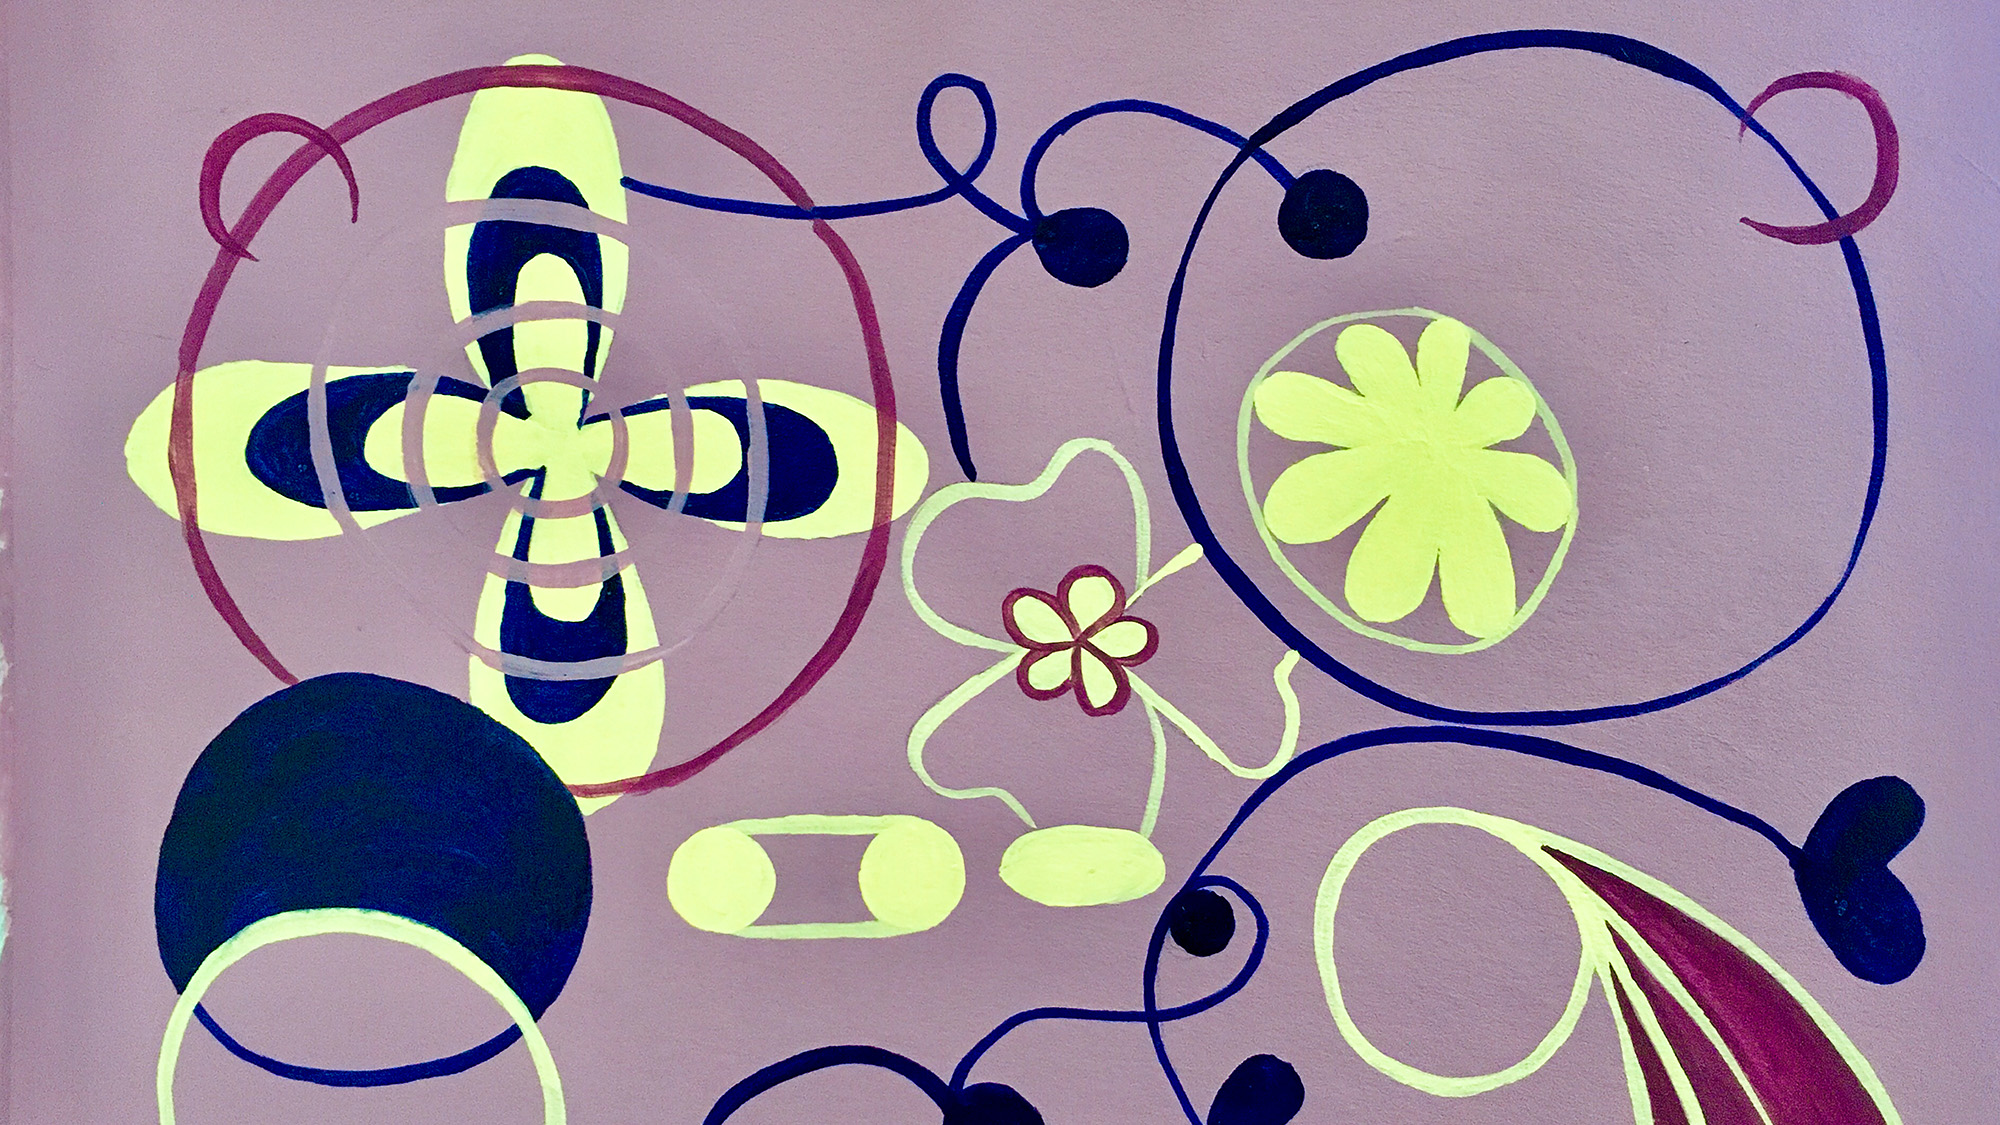 Eine Malerei in Violett-, Blau- und Gelbtönen gehalten stellt abstrakte Muster mit geschwungenen Linien, Spiralen und kleinen bemalten Flächen dar.